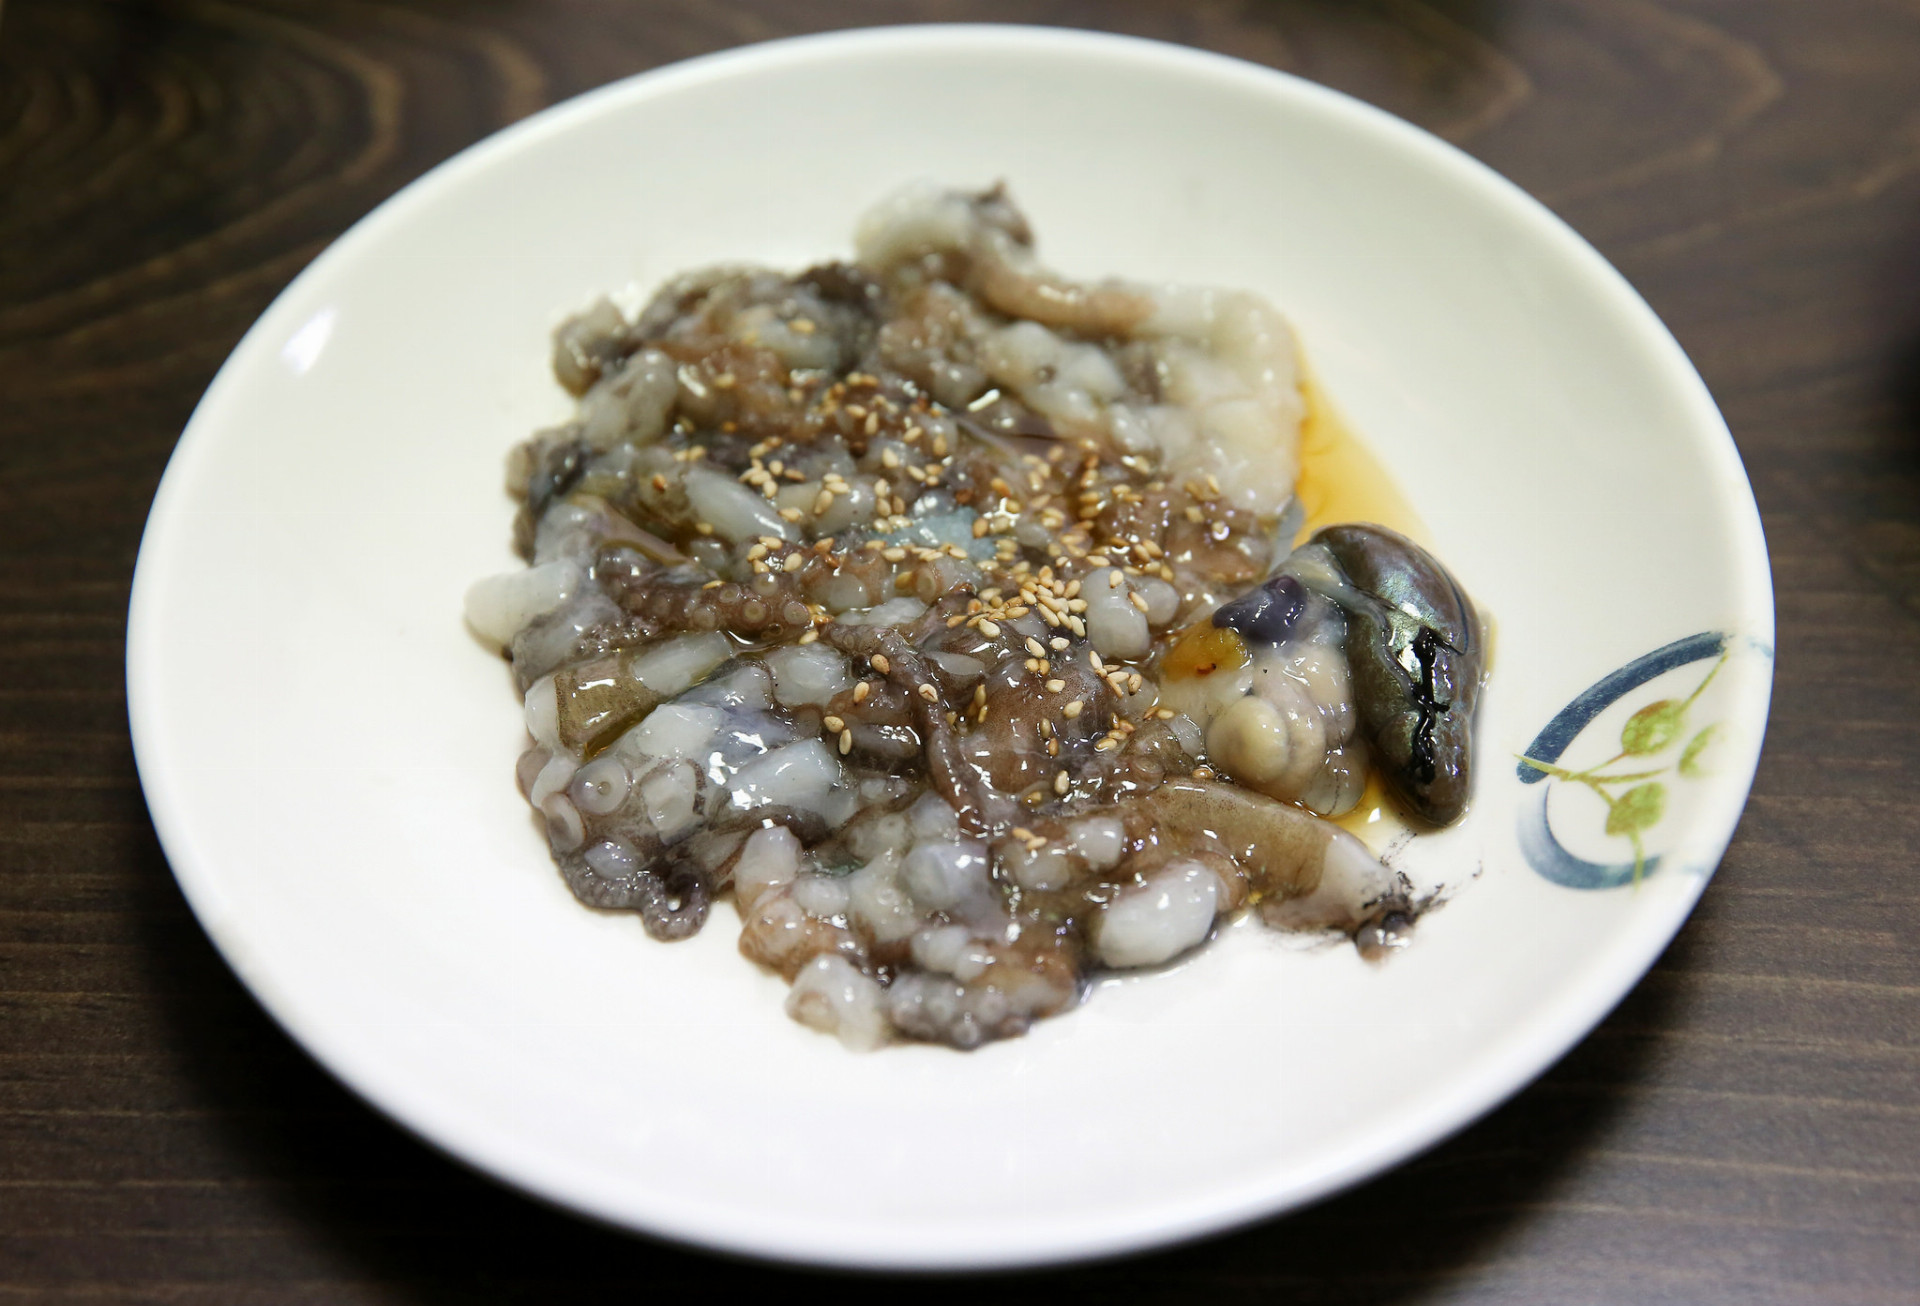 A čo takto živú chobotnicu? Sannakji je tradičný kórejský pokrm z chobotnice nakrájanej na malé kúsky, zatiaľ čo jej chápadlá sa ešte krútia.